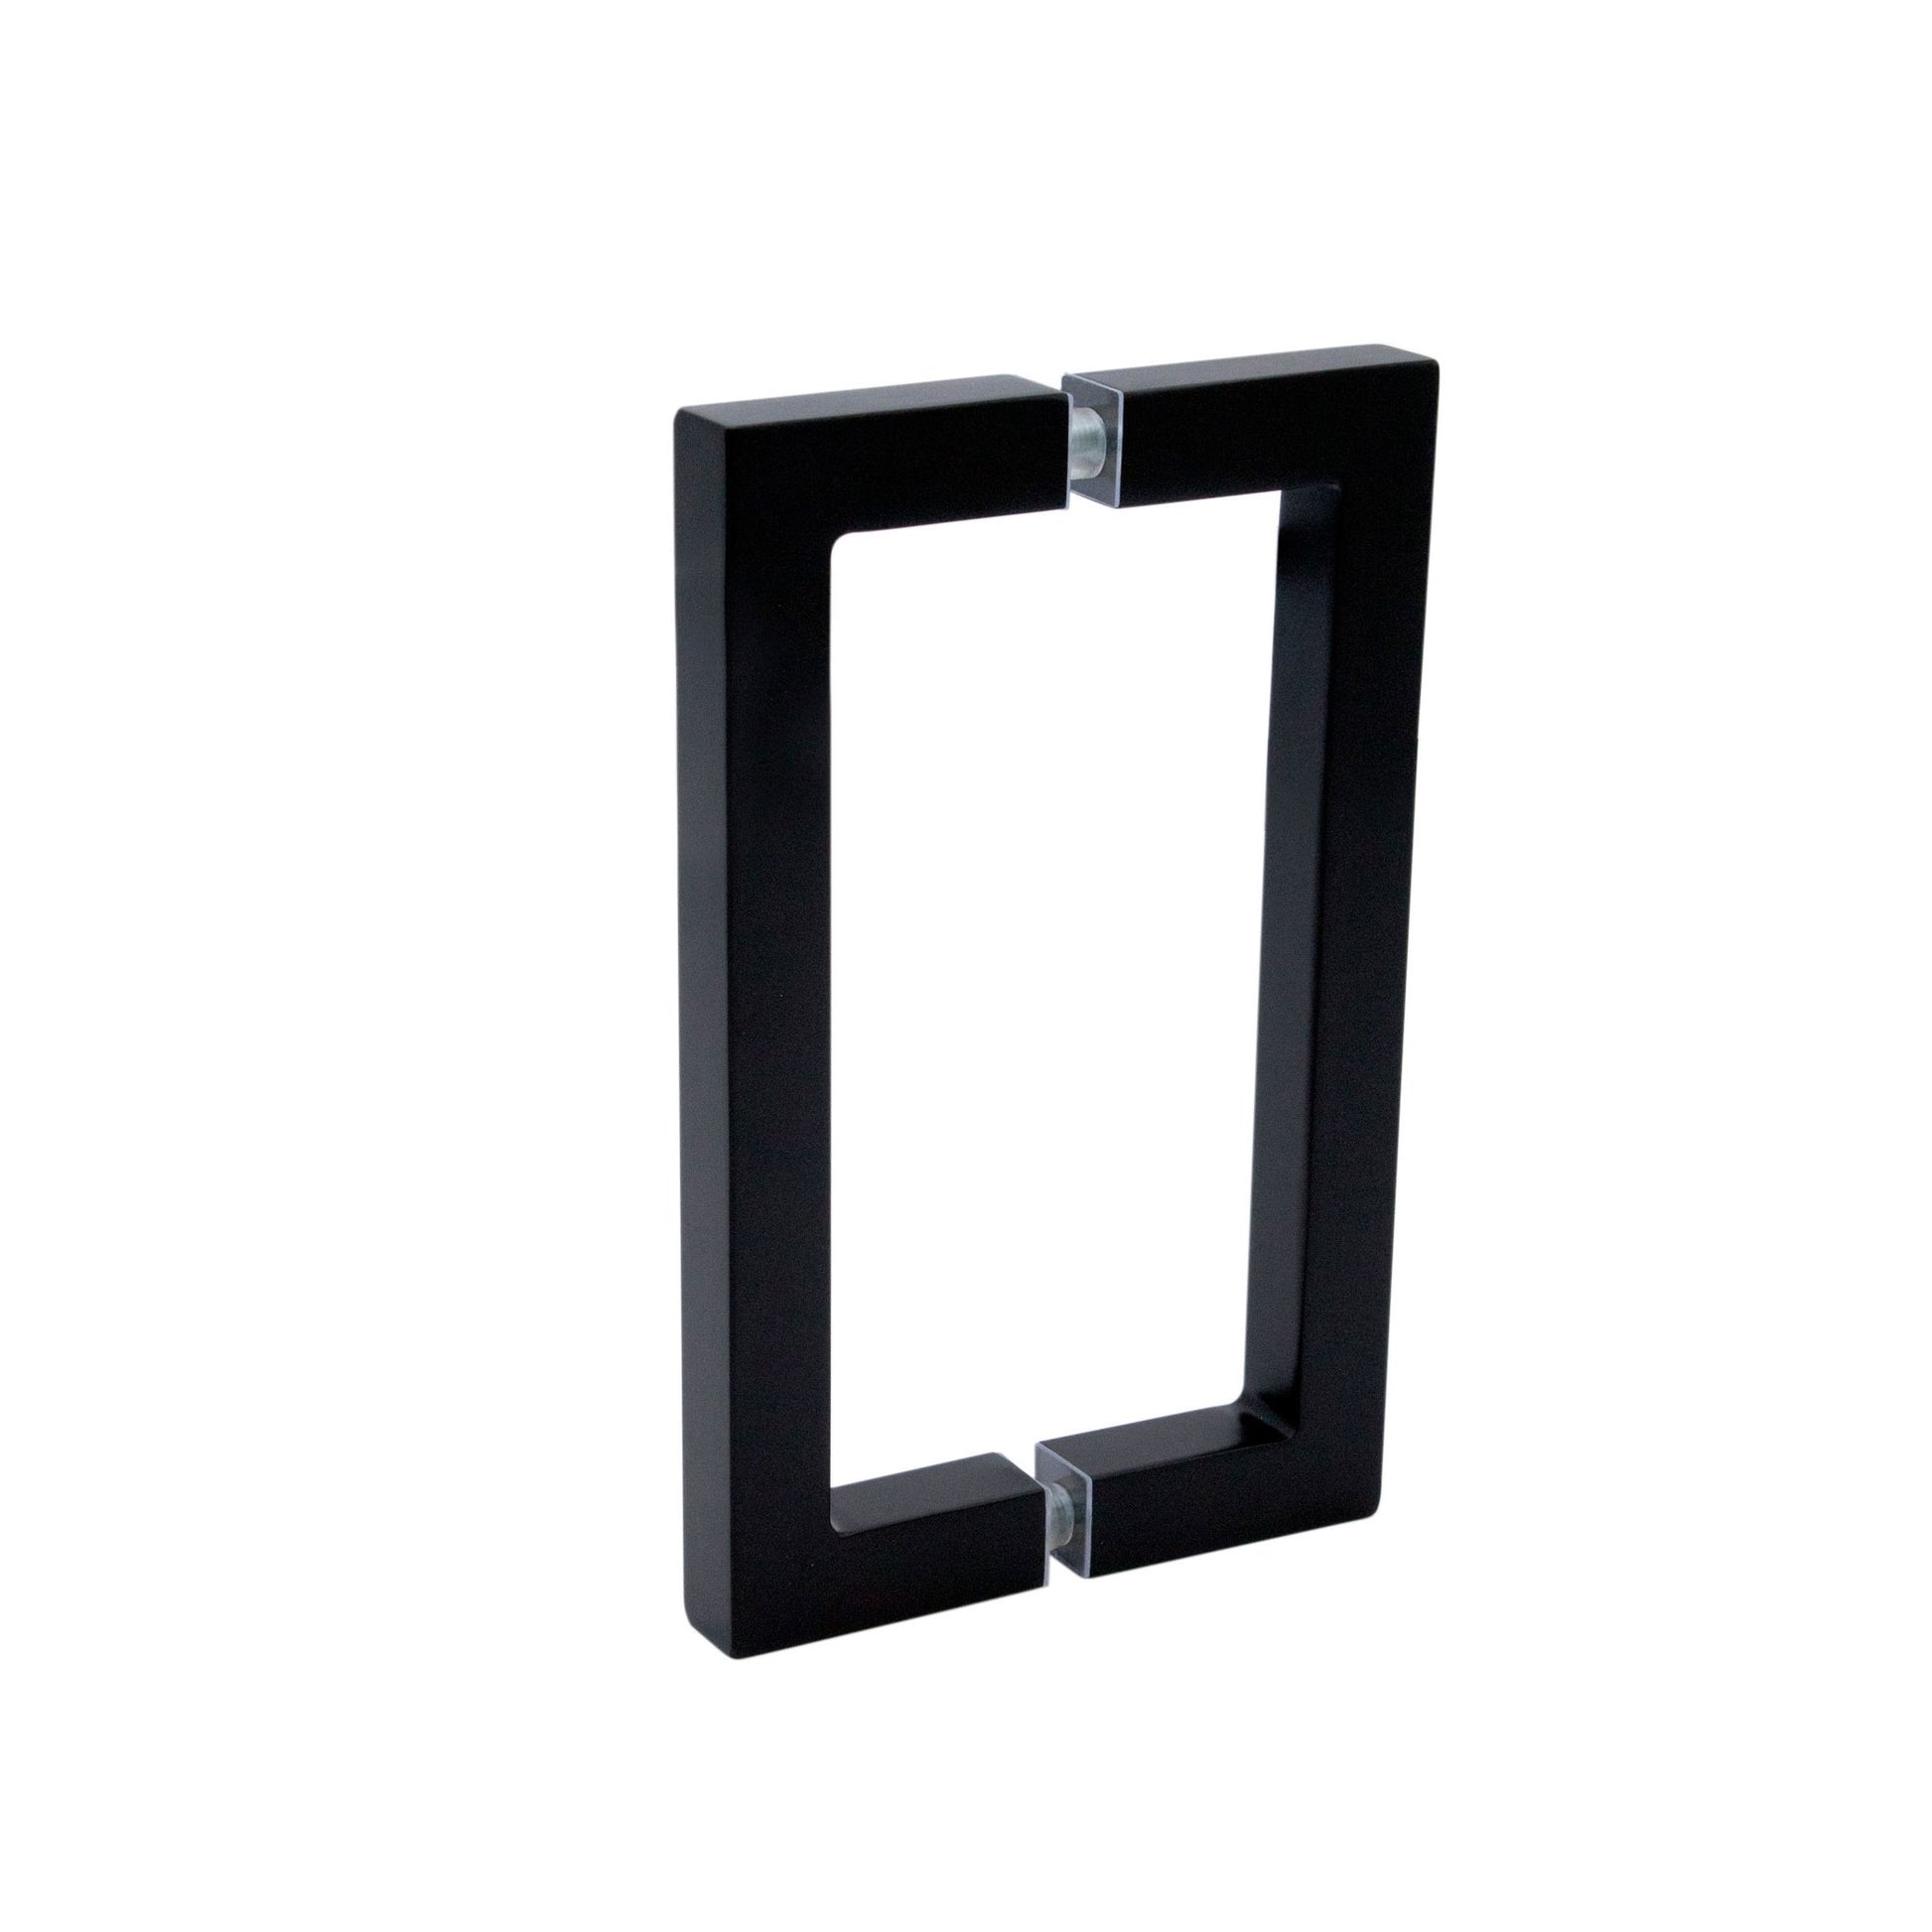 6" / Matte Black | glass shower door pull handles